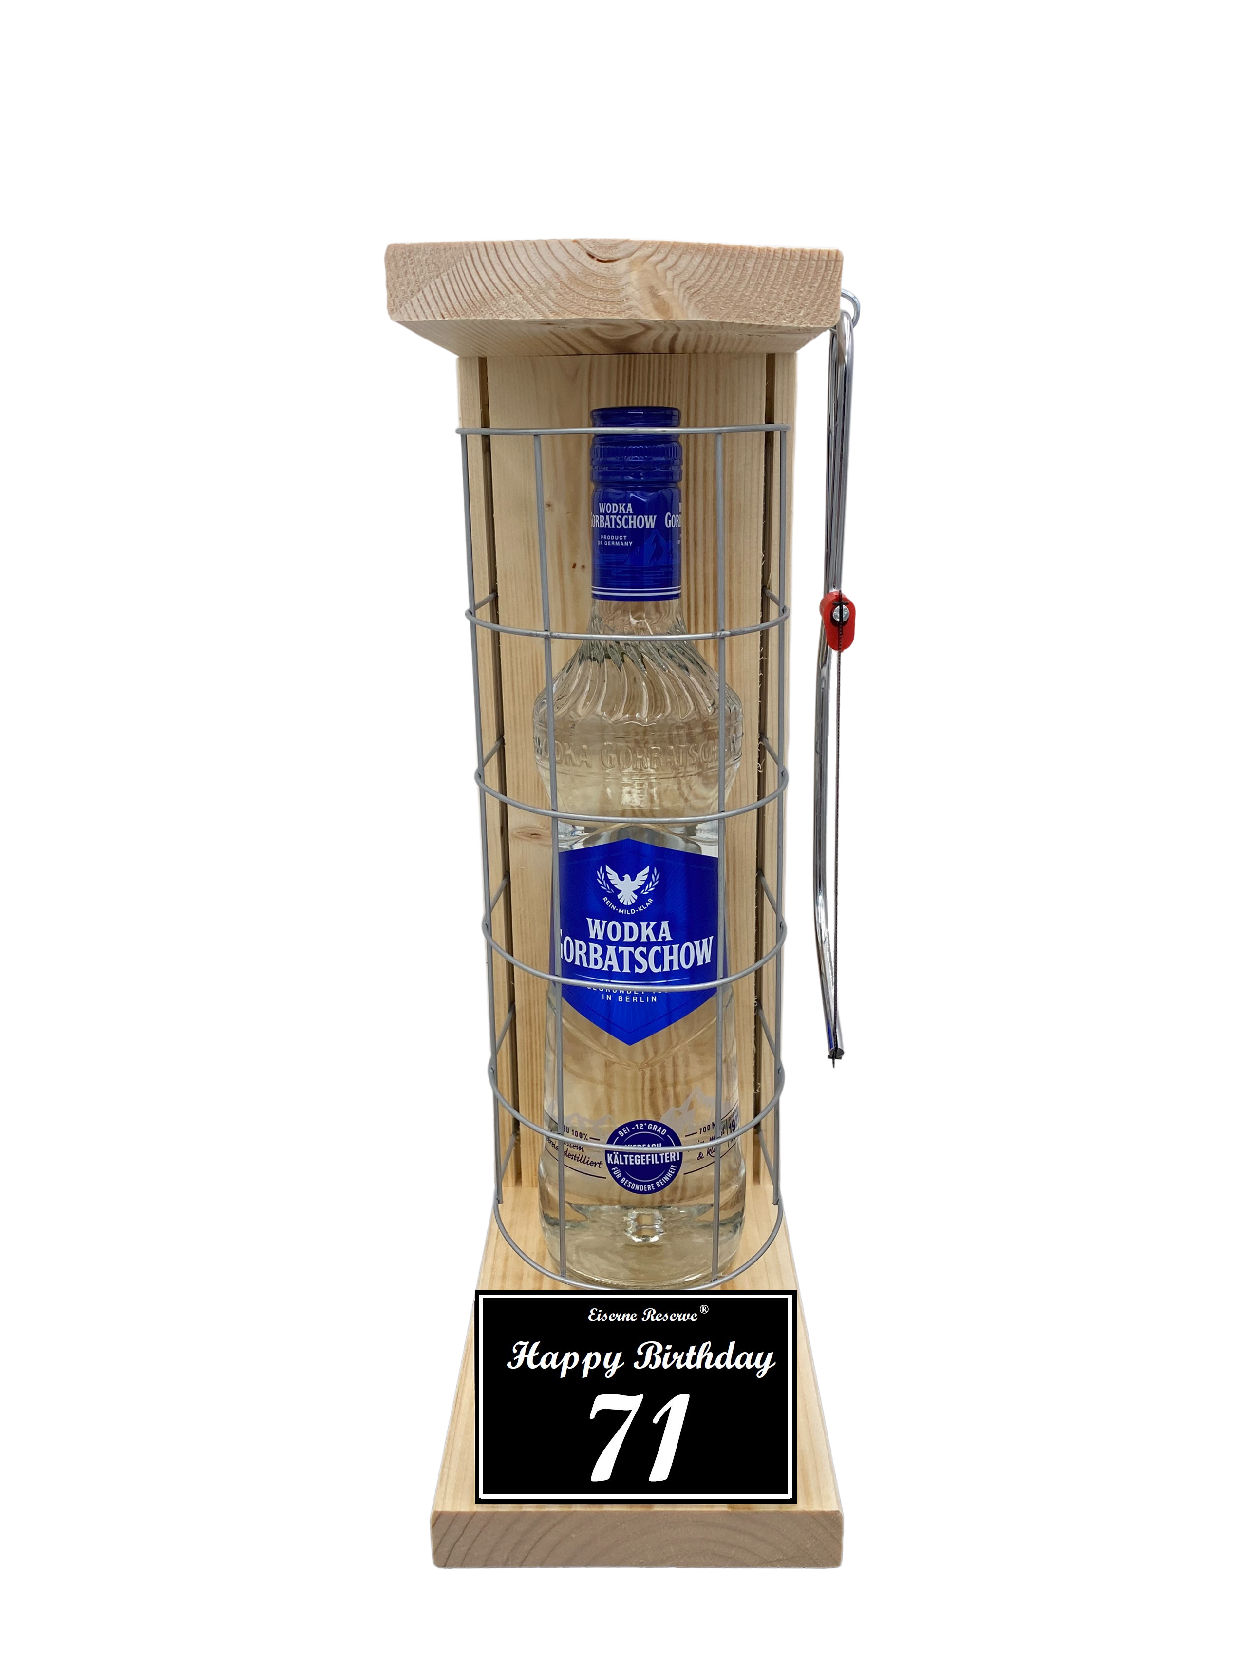 Wodka Geschenk zum 71 Geburtstag - Eiserne Reserve Gitterkäfig